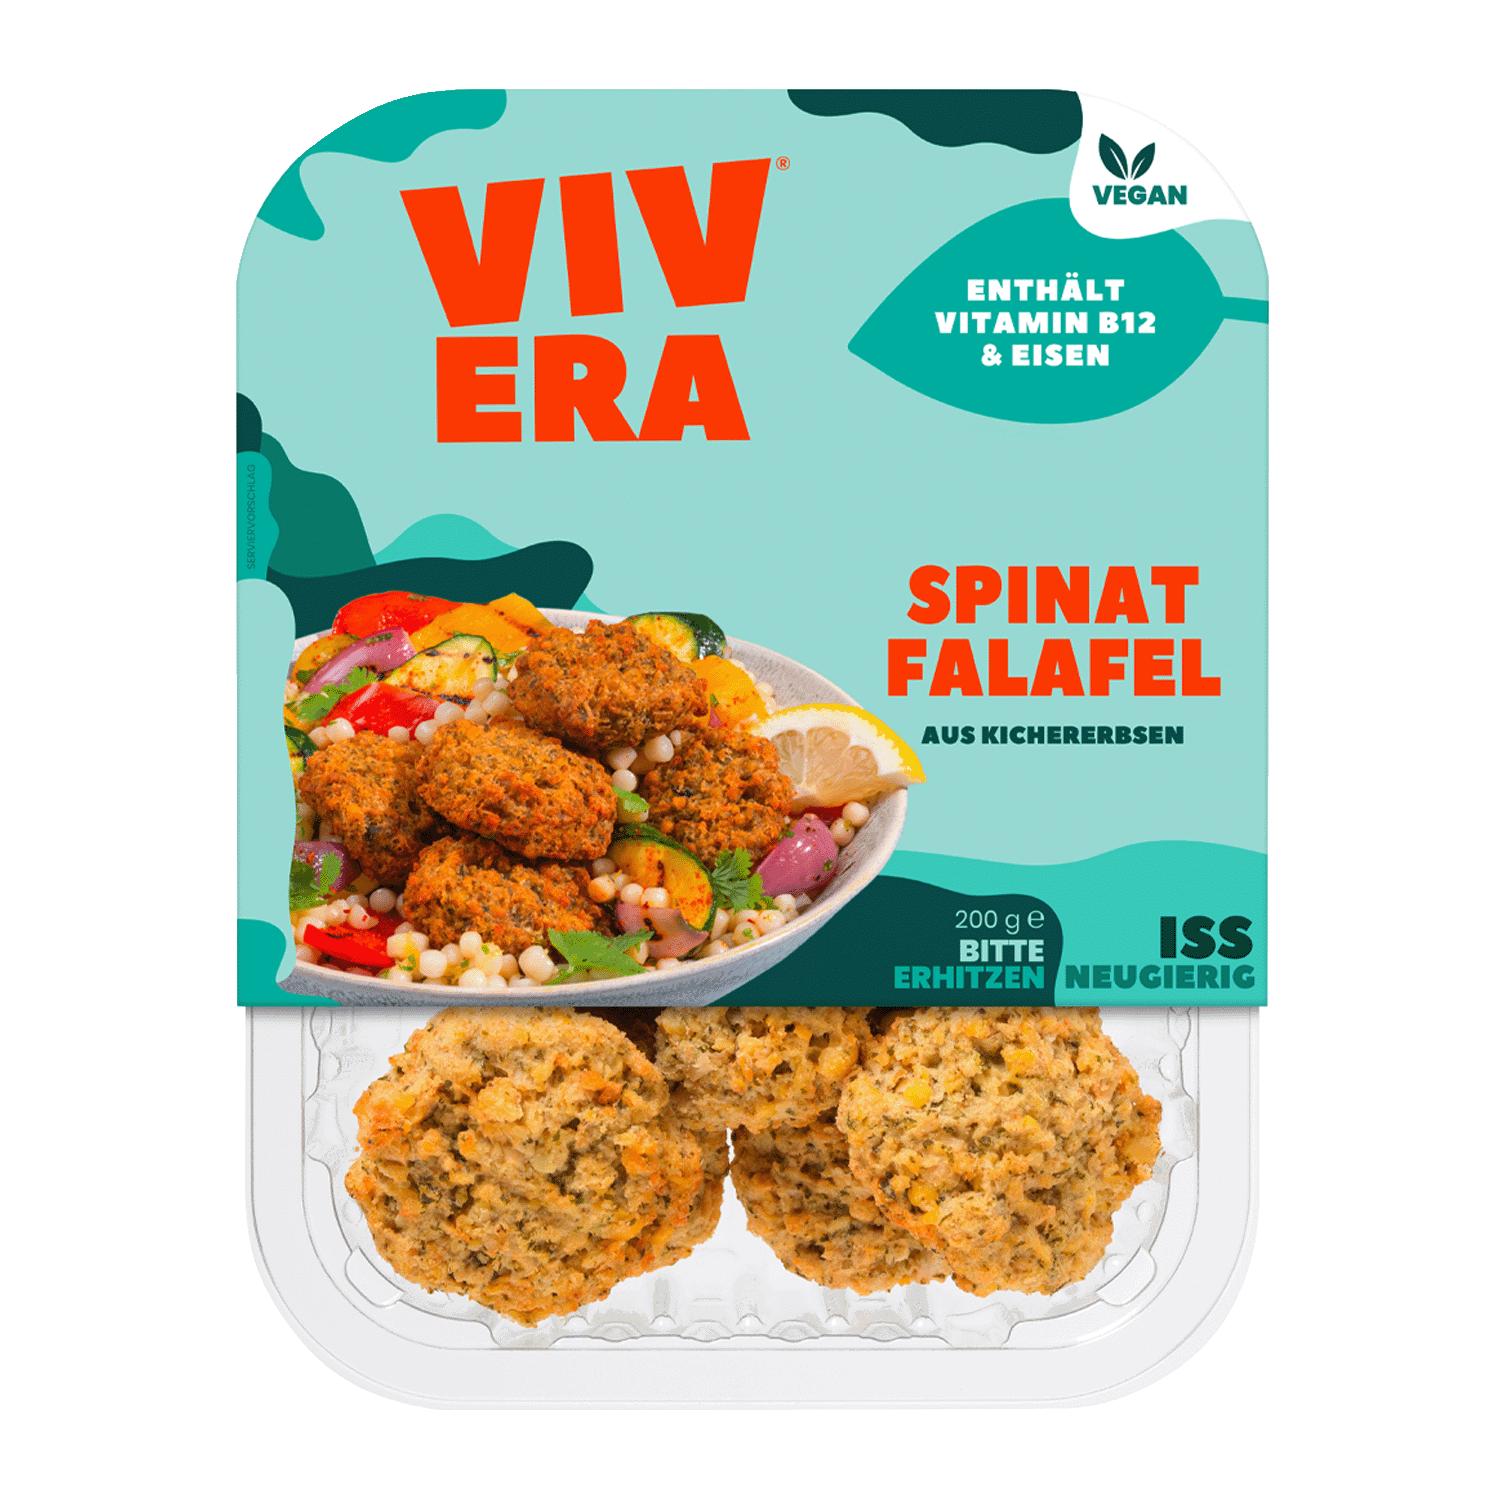 Vegane Spinat Falafel, 200g